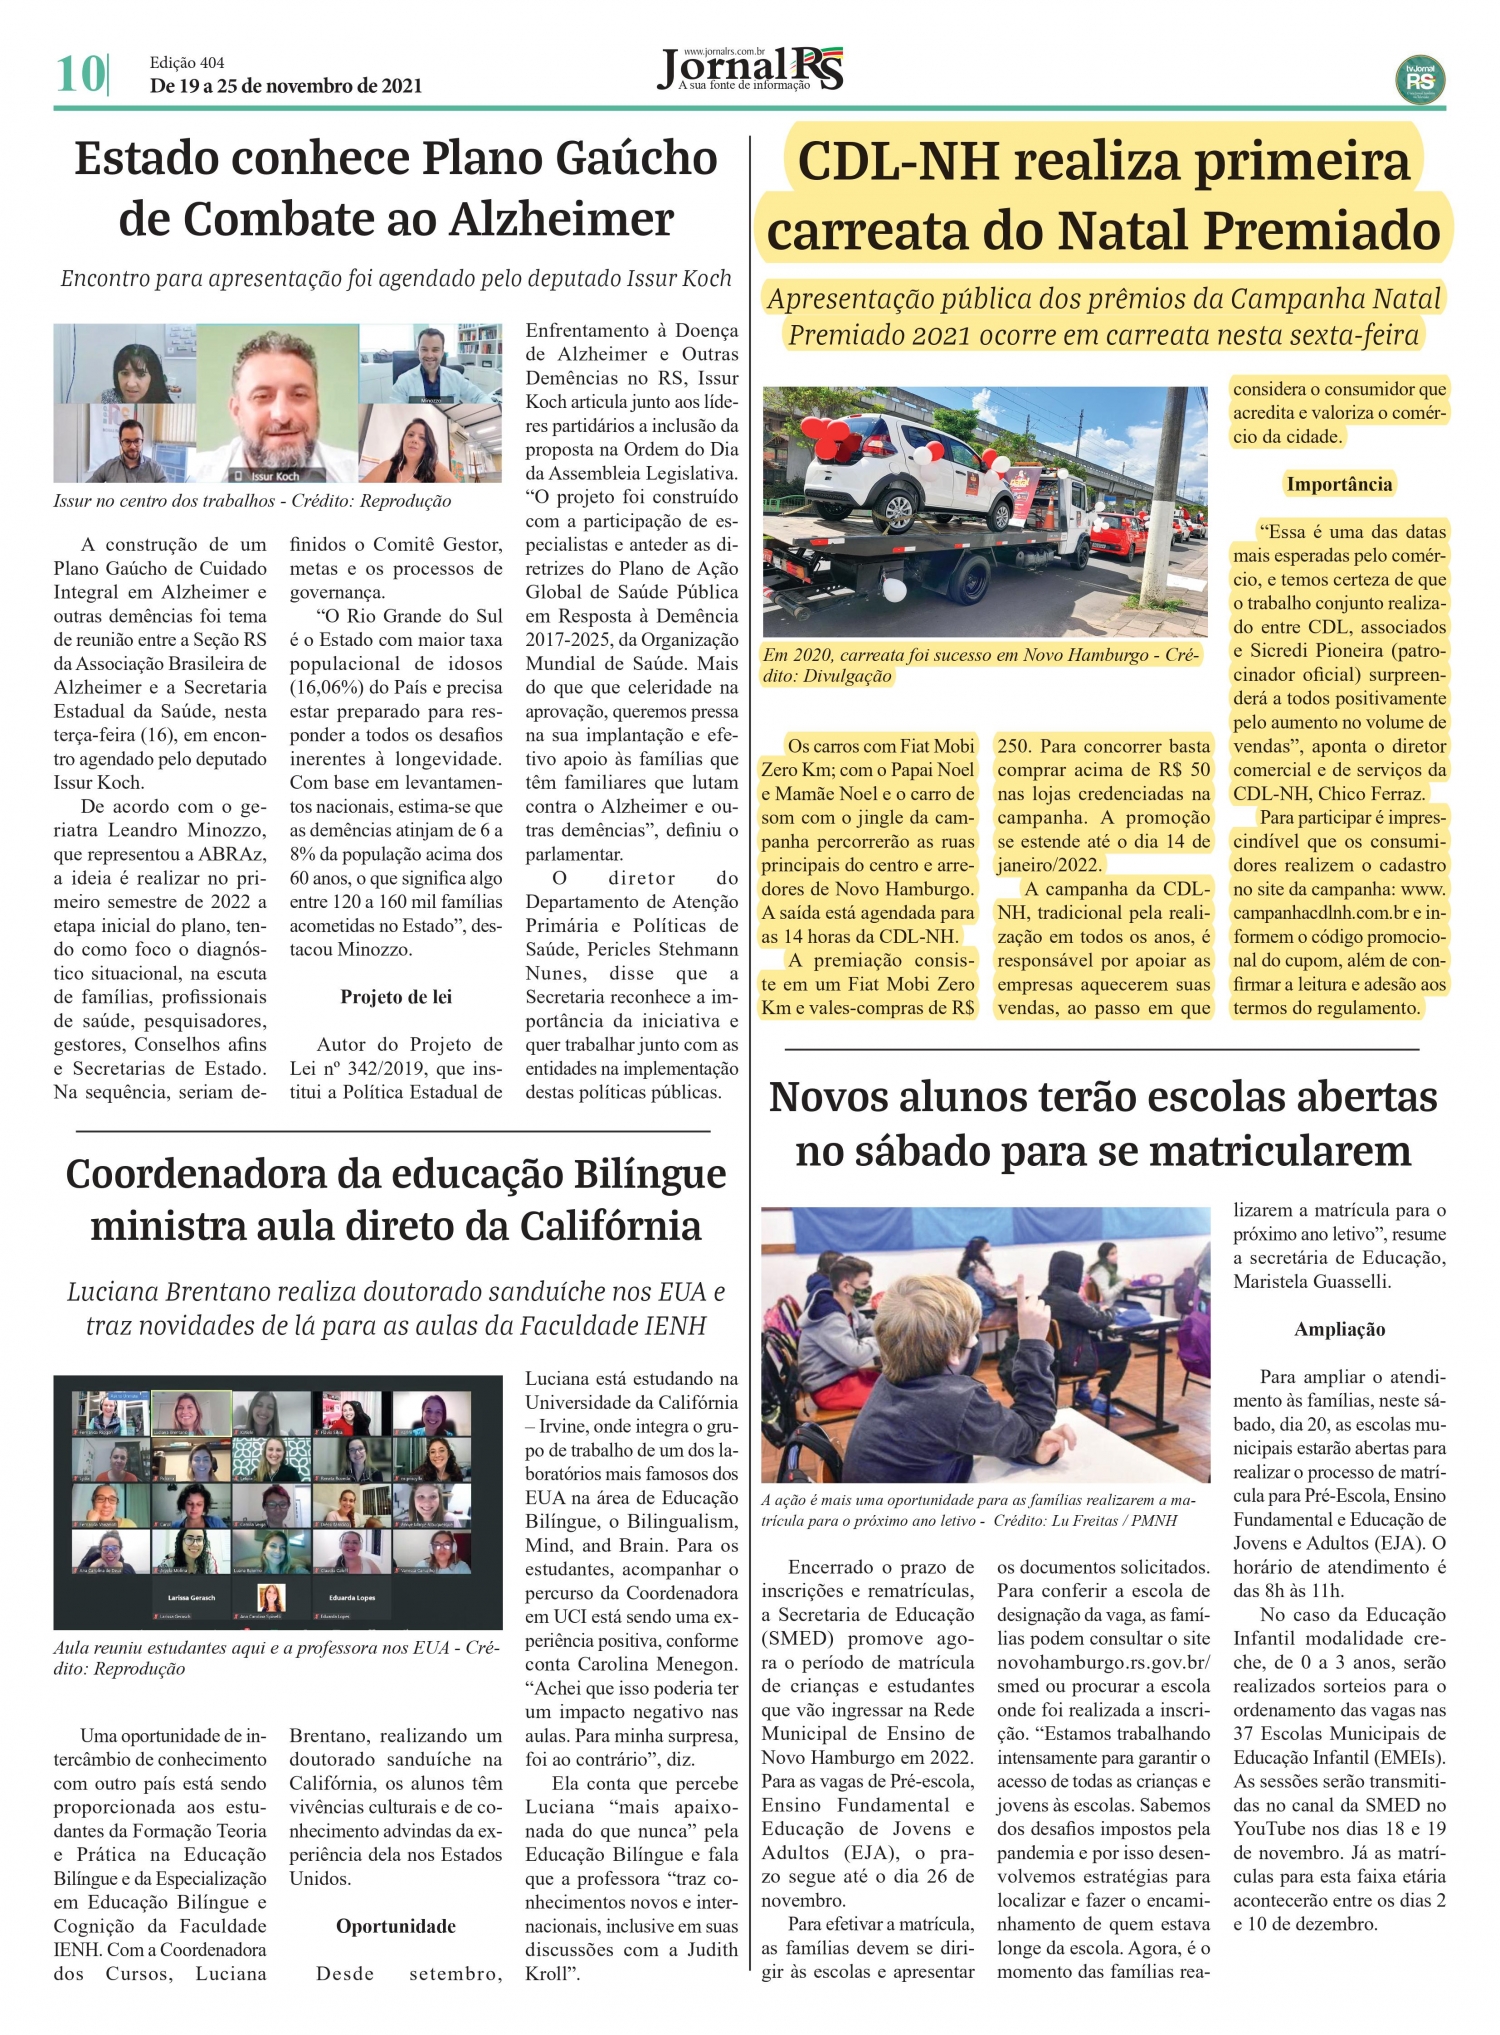 CDL NH é noticia em jornal da região com a Primeira Carreata do Natal Premiado  2021